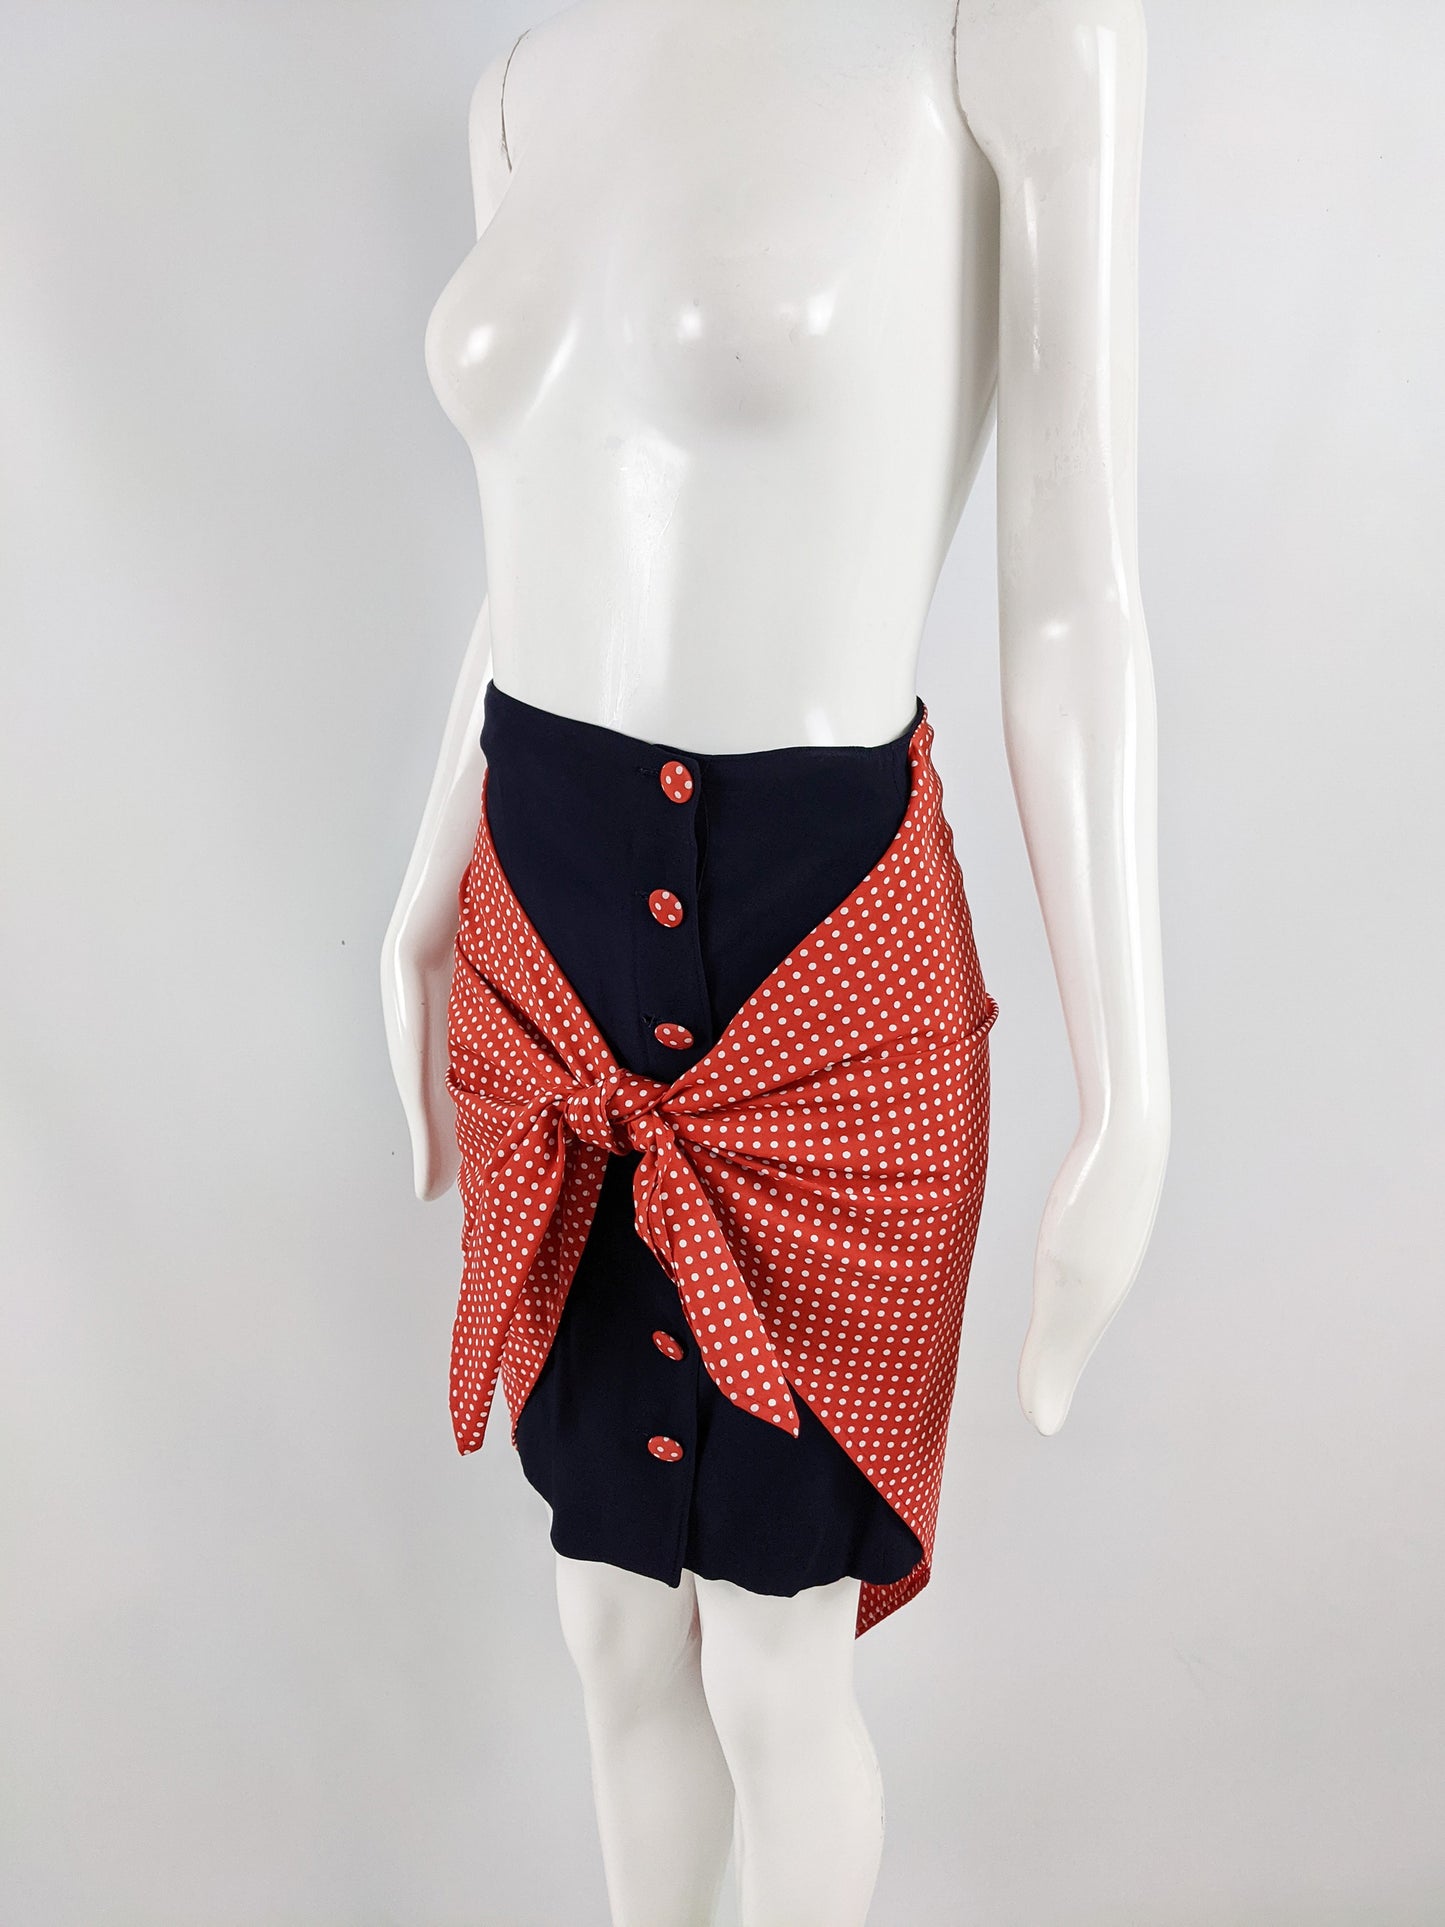 Vintage 1990s Navy Blue & Red Polka Dot Wraparound Skirt